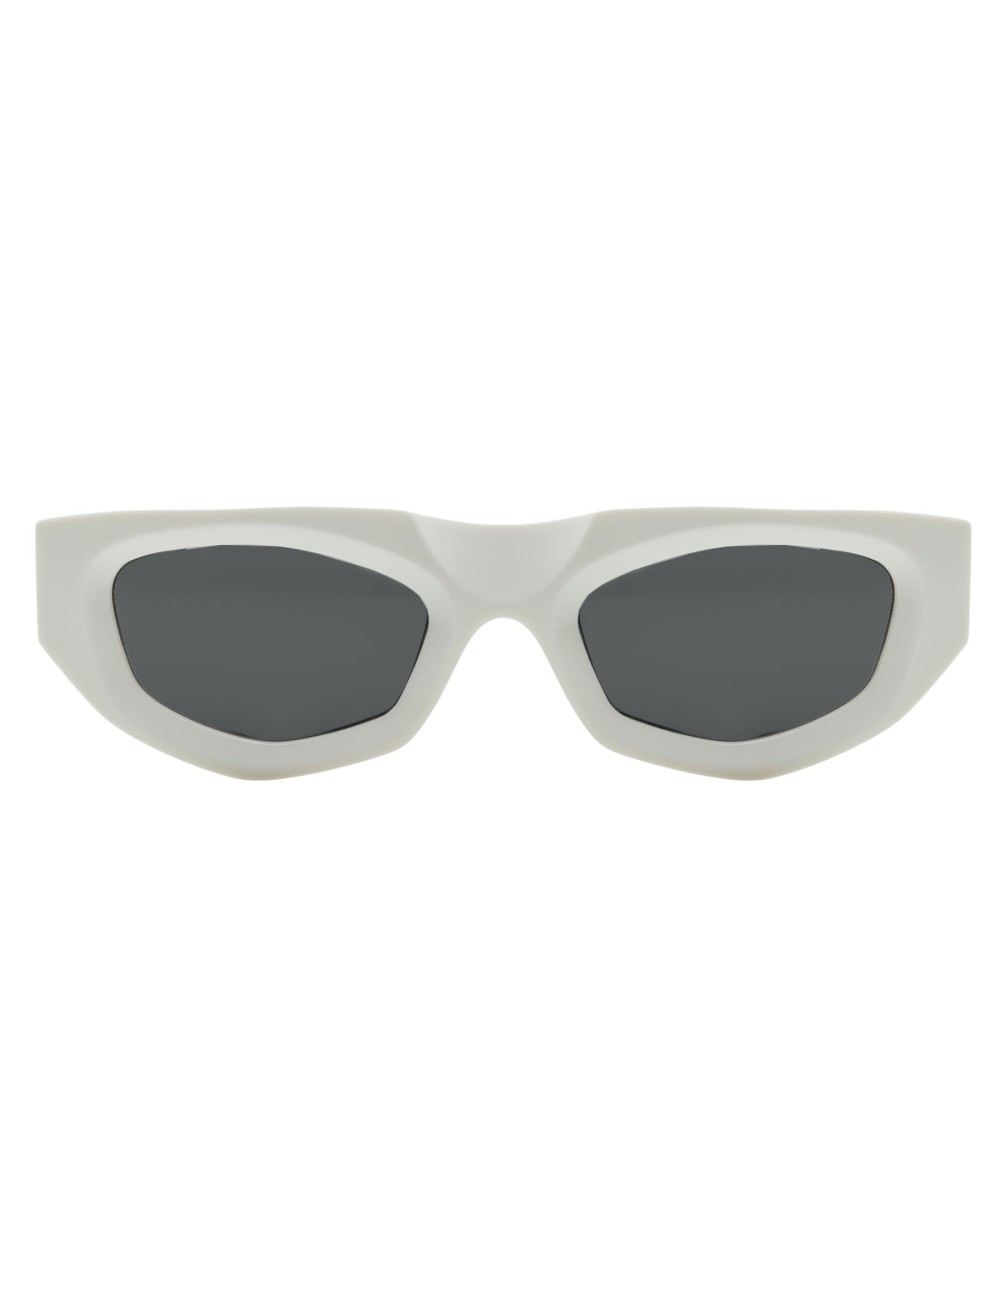 Leziff Tokyo white sunglasses